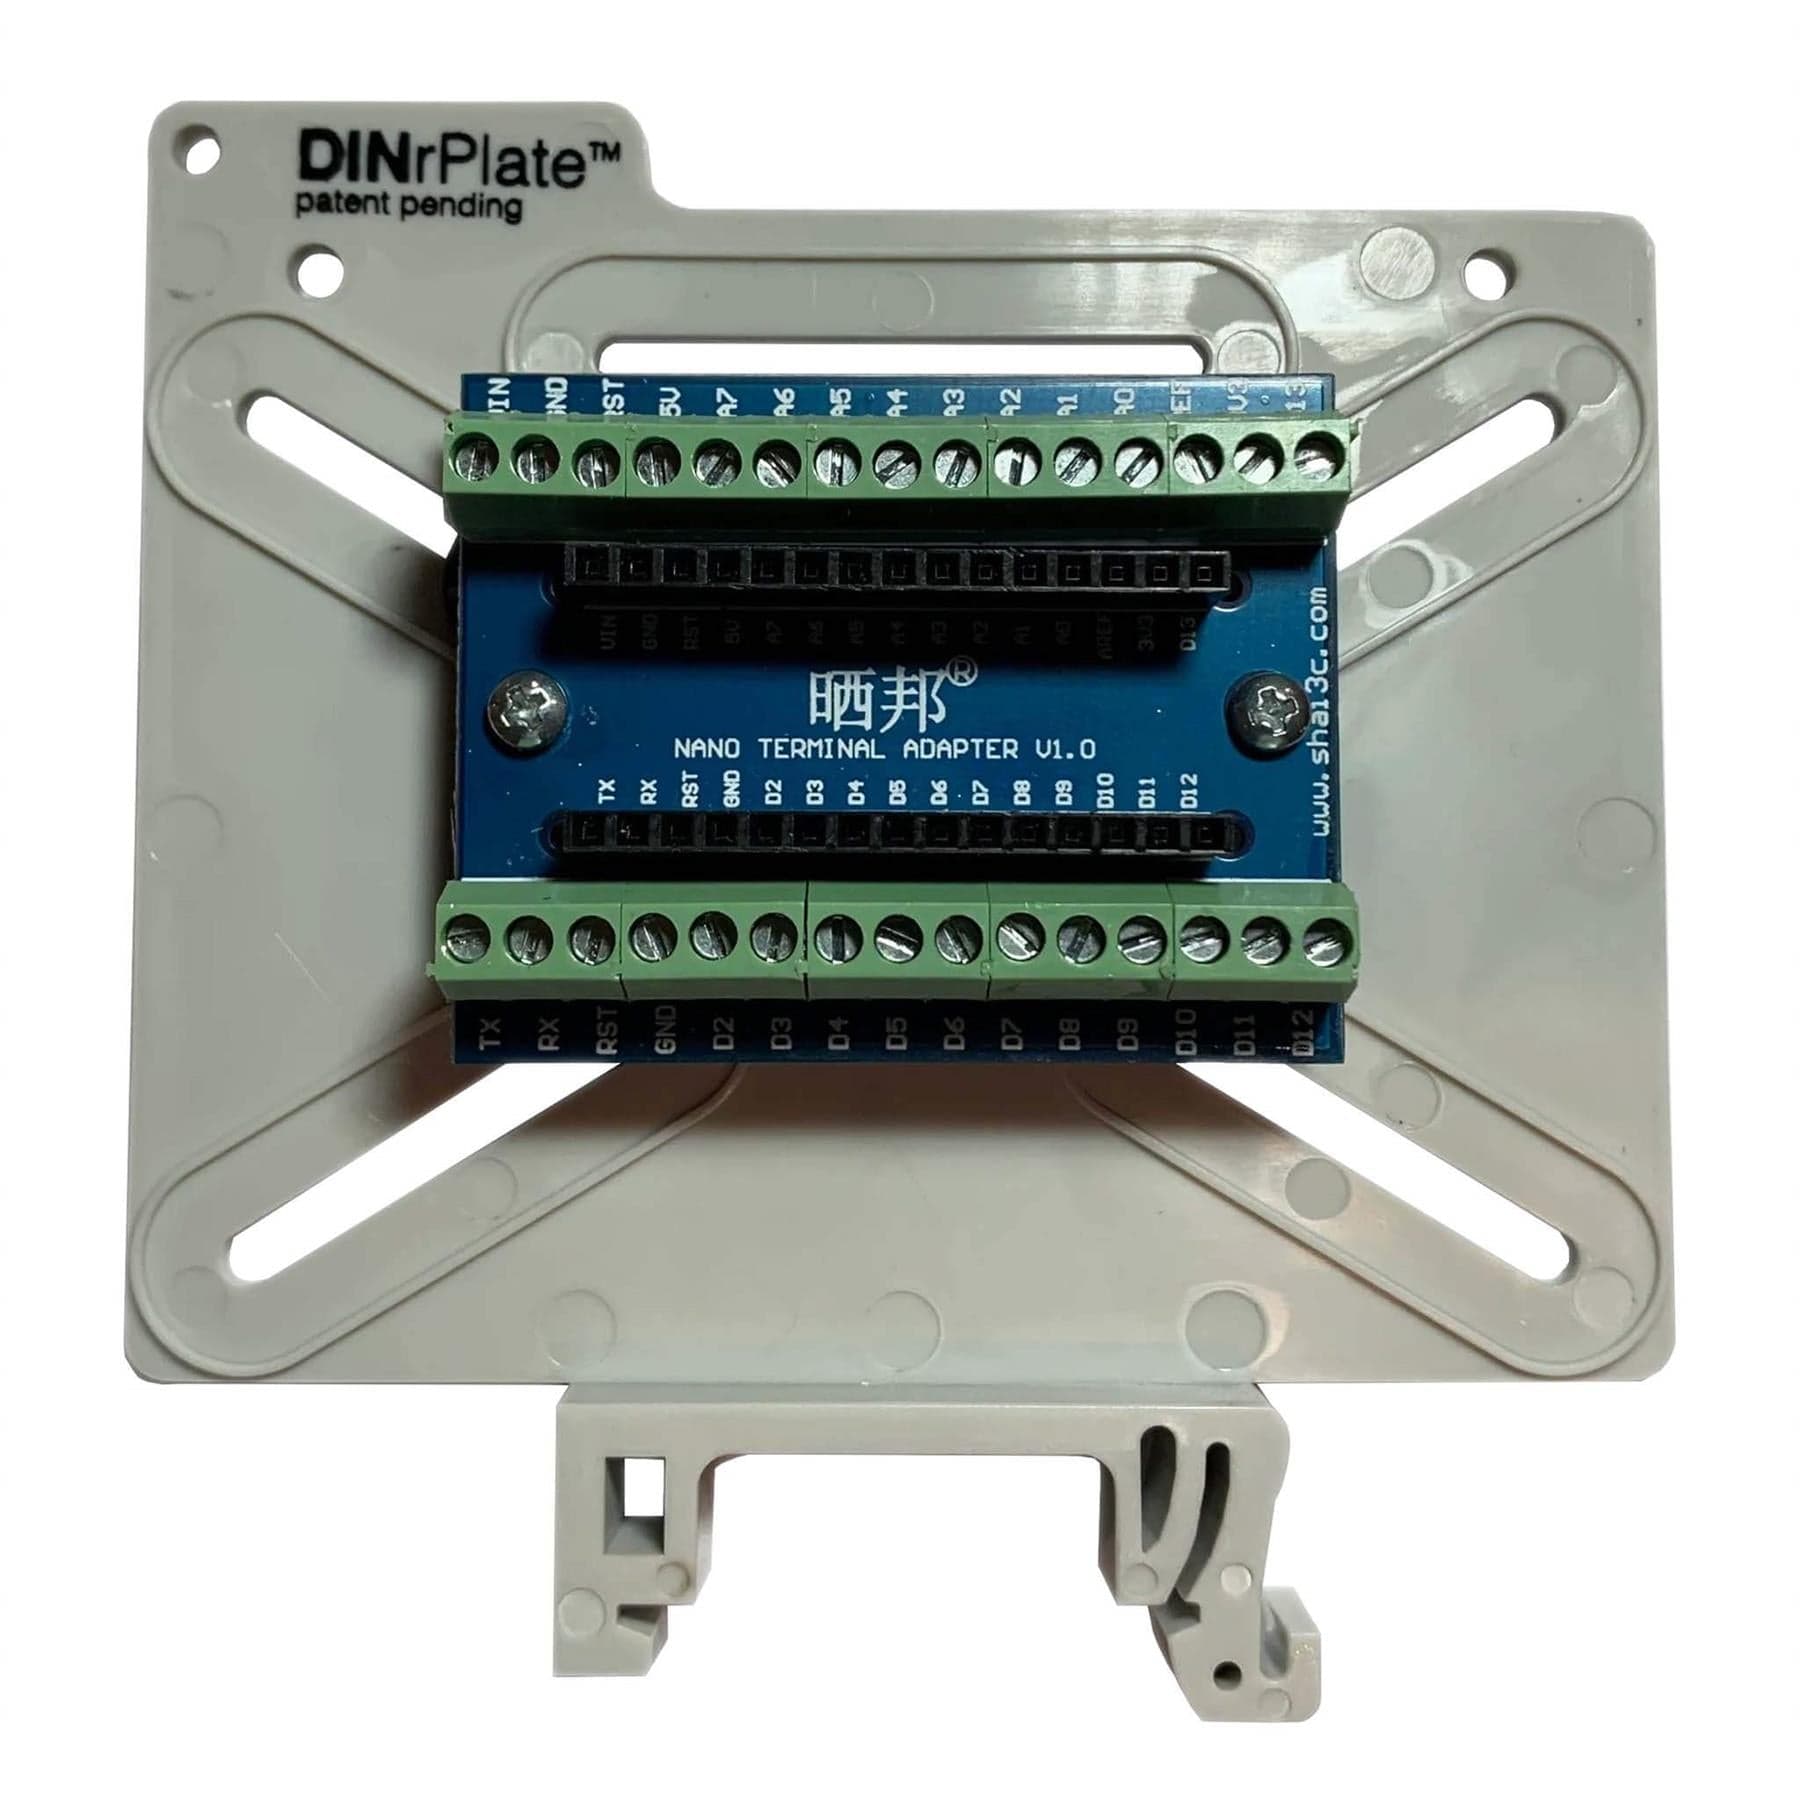 DINrPlate Universal - PCB DIN Rail Mount - The Pi Hut